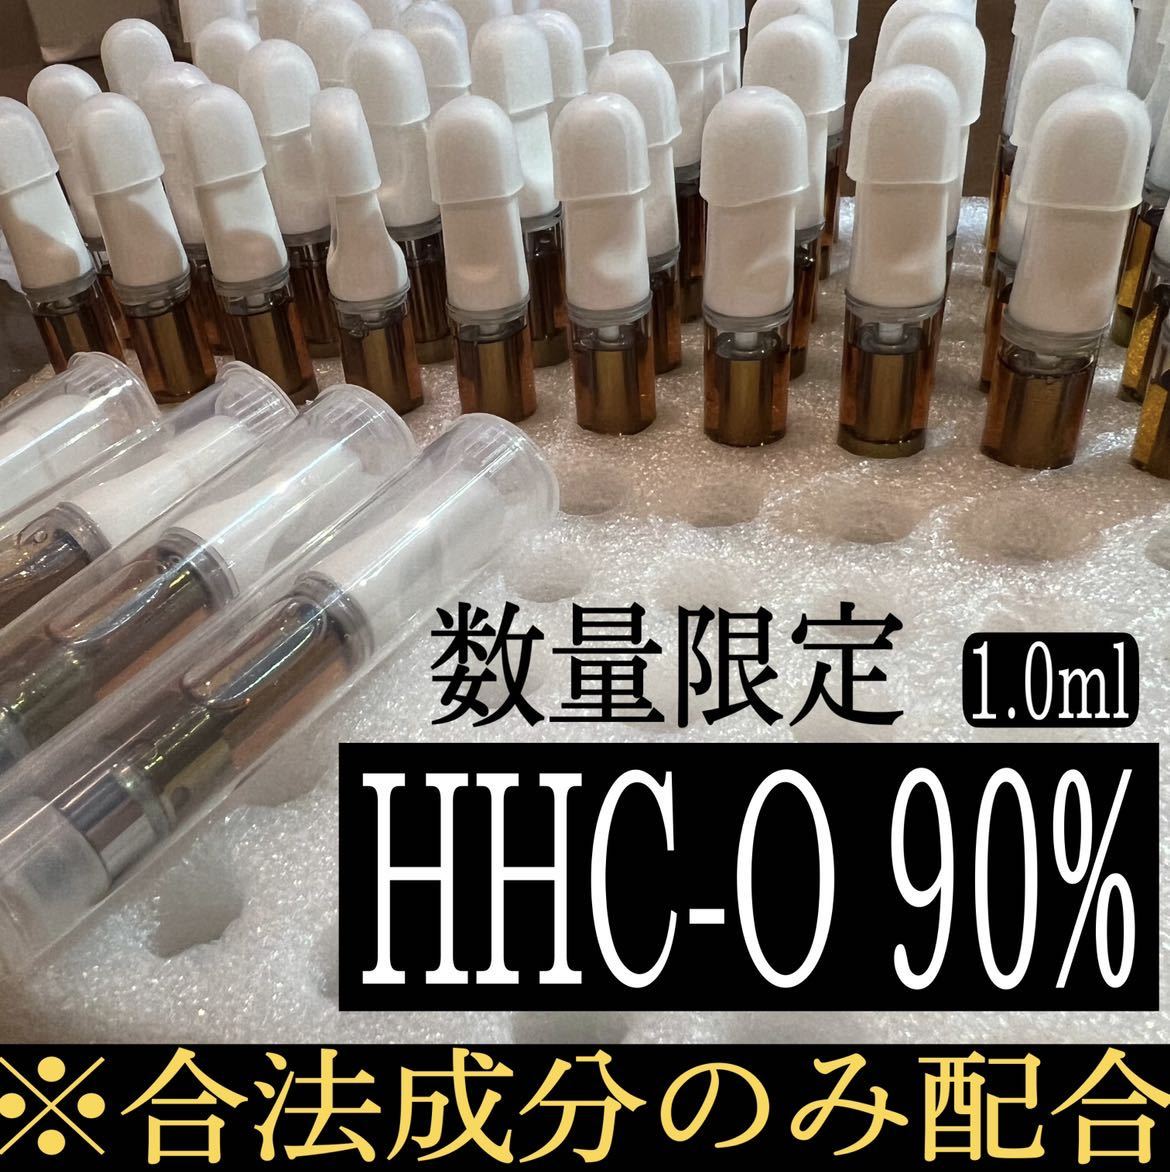 セール Natural リキッド 数量限定HHC-O Flavor 1ml 90% HHCO - 電子たばこ